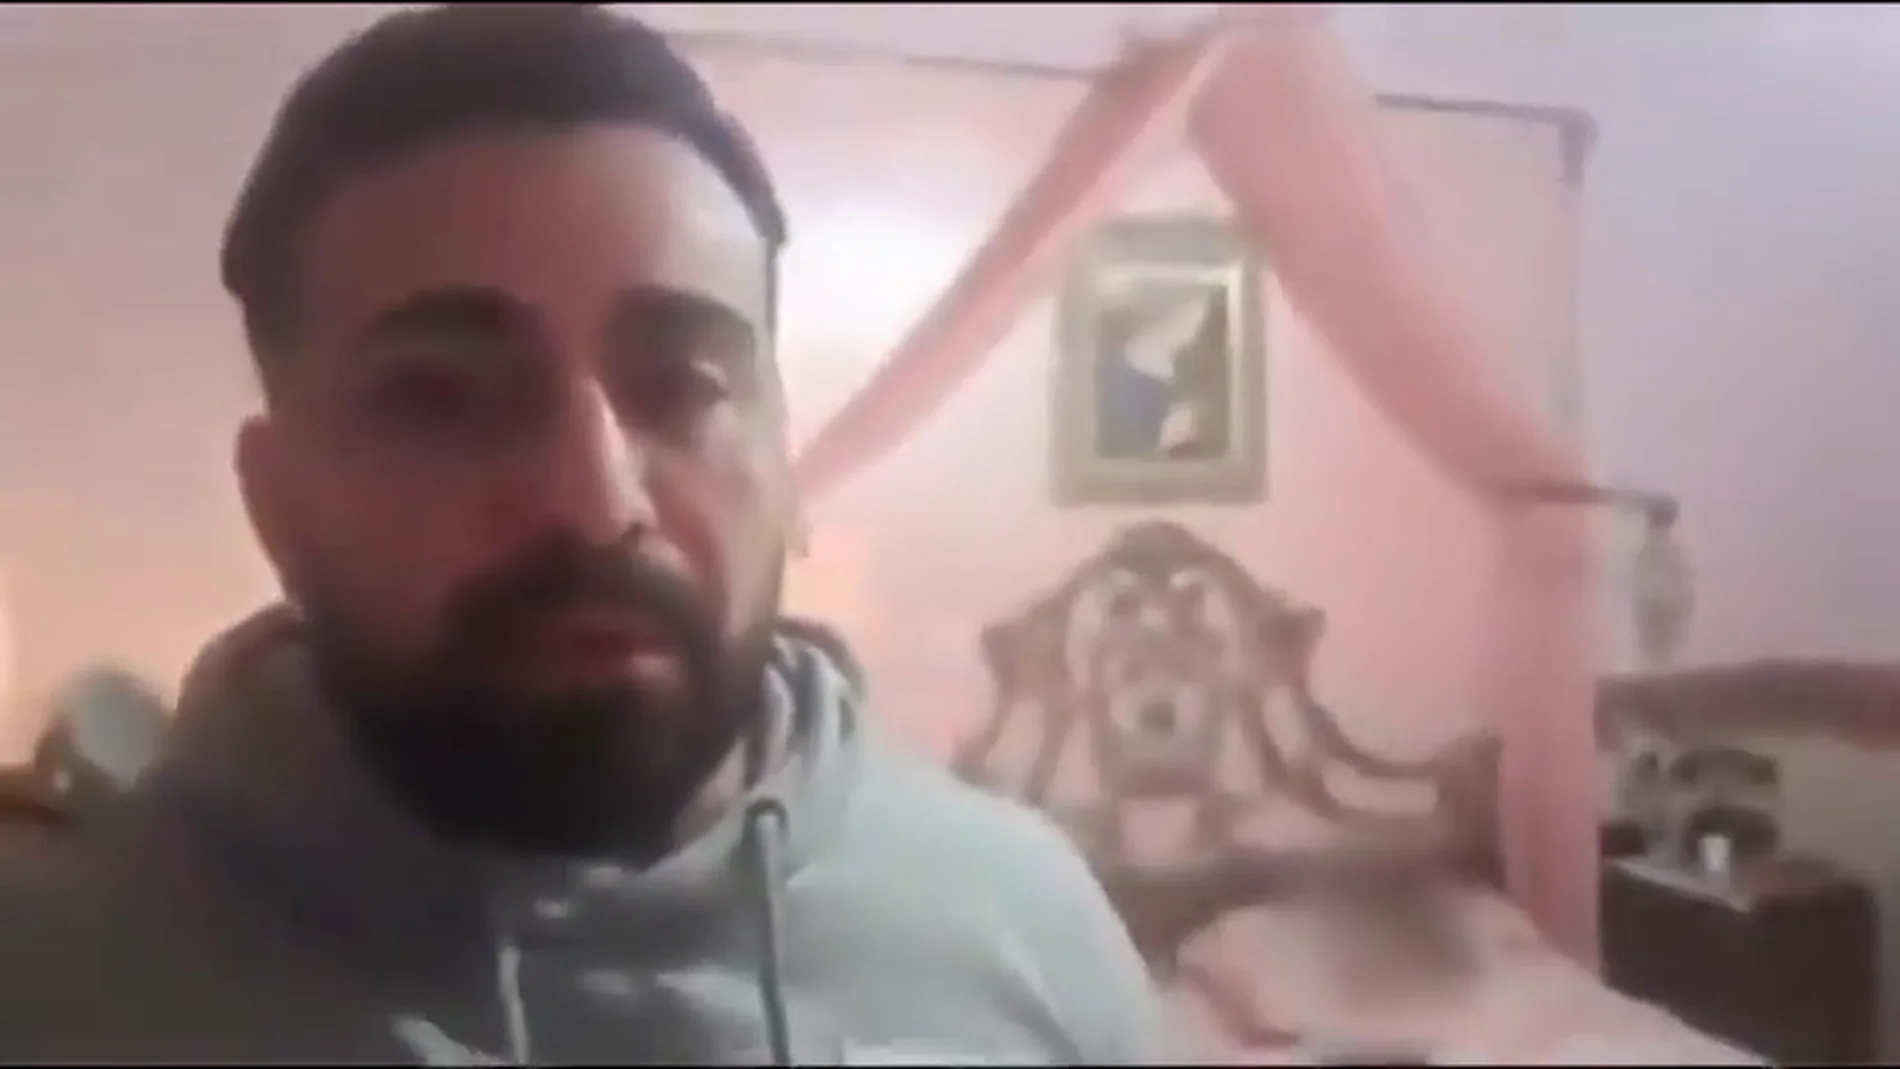 El desgarrador vídeo de un italiano atrapado en casa con su hermana muerta por coronavirus: "Estoy destruido"